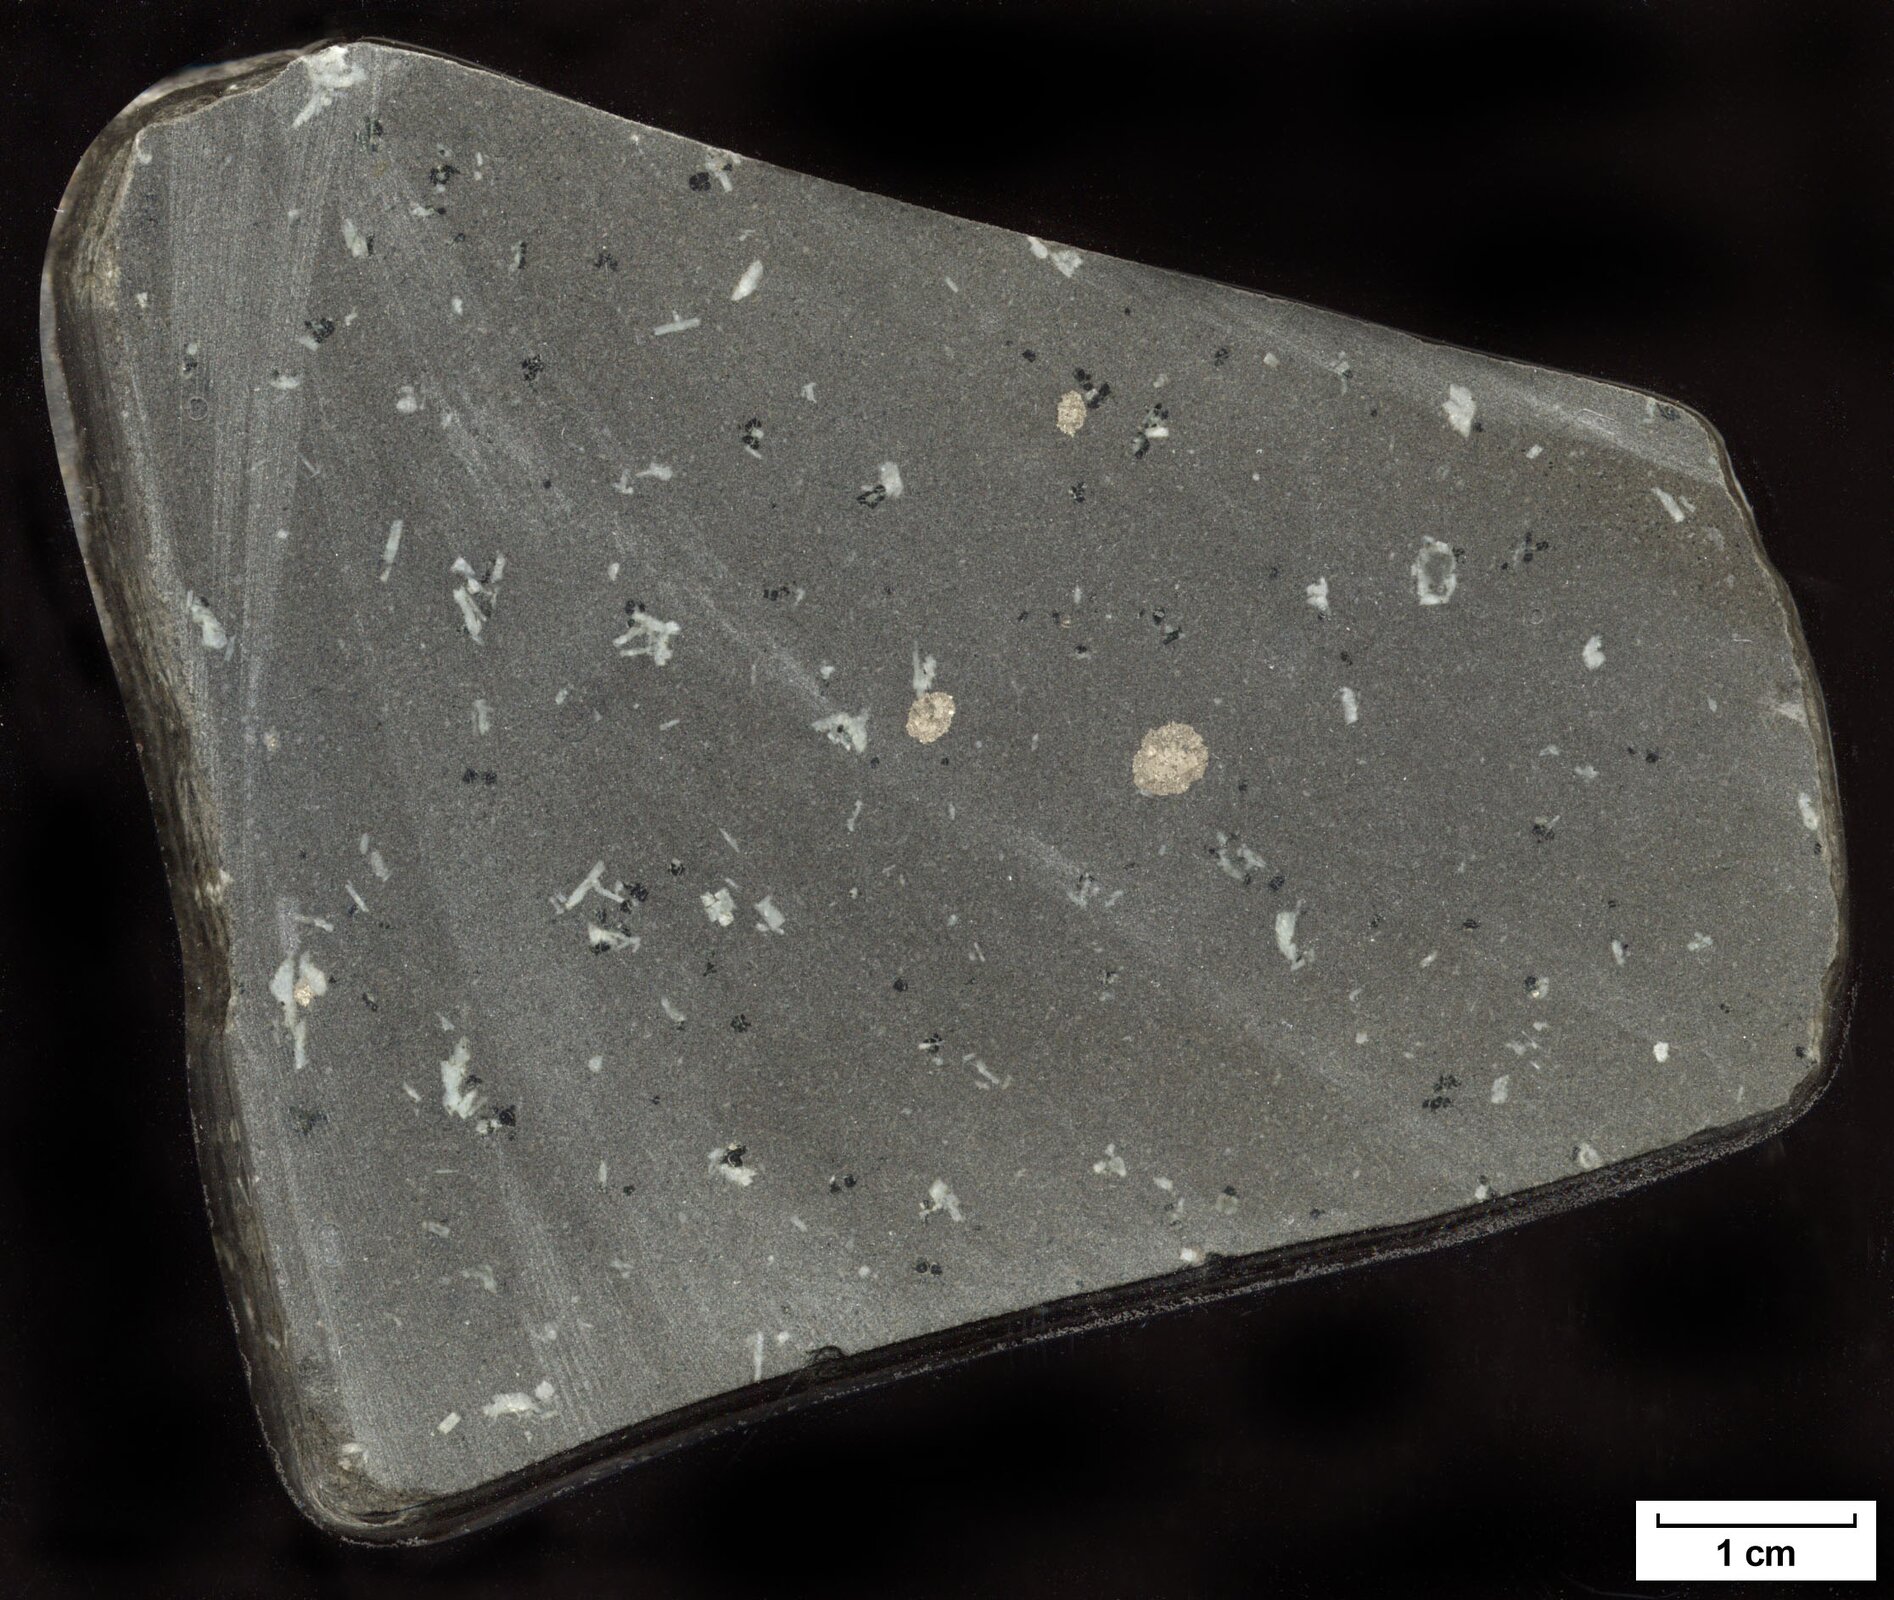 Na zdjęciu przedstawiony jest bazalt – skała lita o strukturze bardzo drobnoziarnistej i barwie ciemnoszarej. W drobnoziarnistej masie skalnej małe kryształy jaśniejszego koloru. Fragment skały przypomina trapez, jest płaski i ma wielkość osiem na sześć centymetrów.